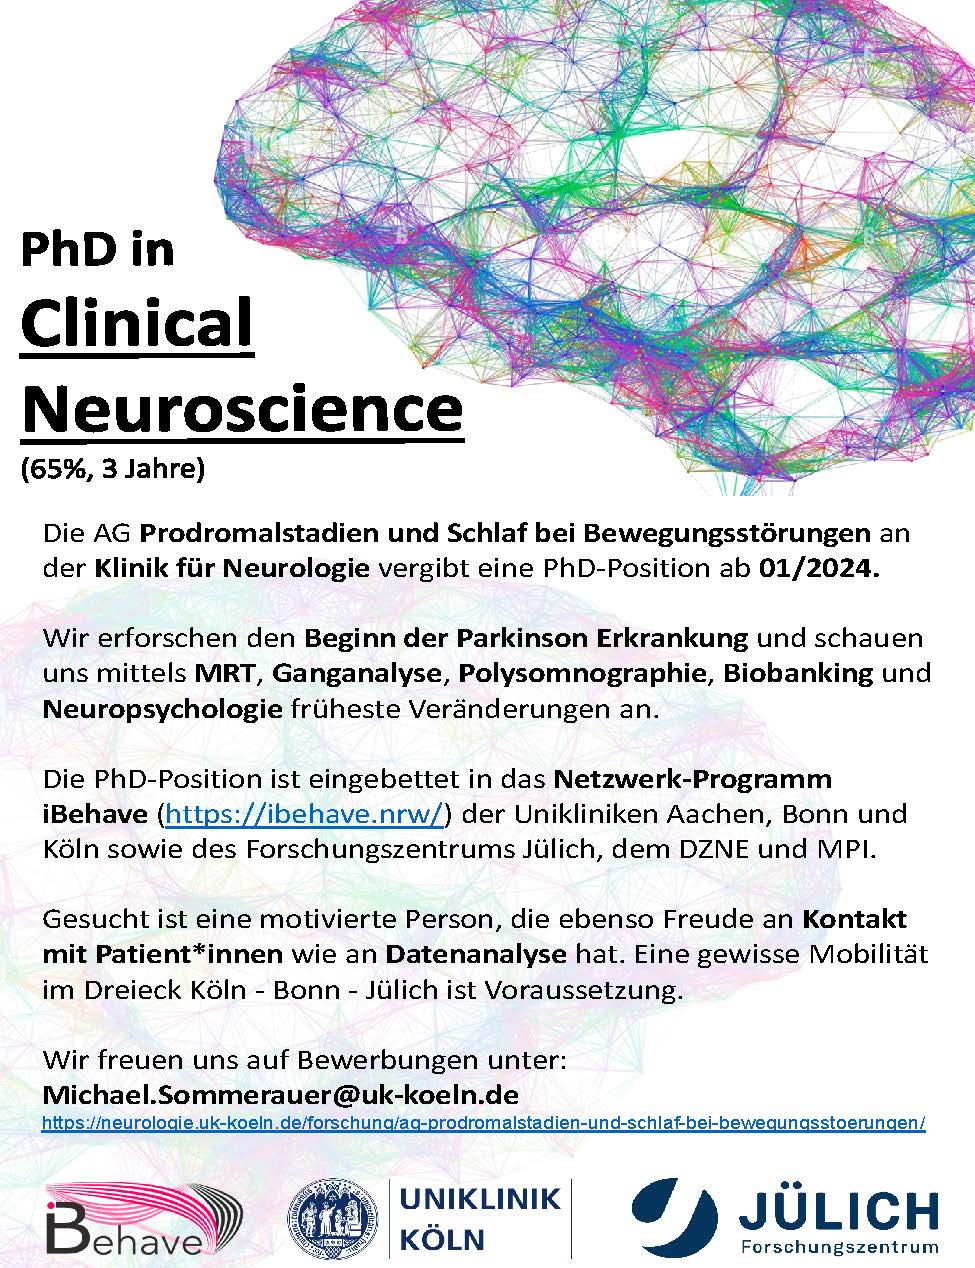 PhD_Clinical-Neuroscience_Sommerauer